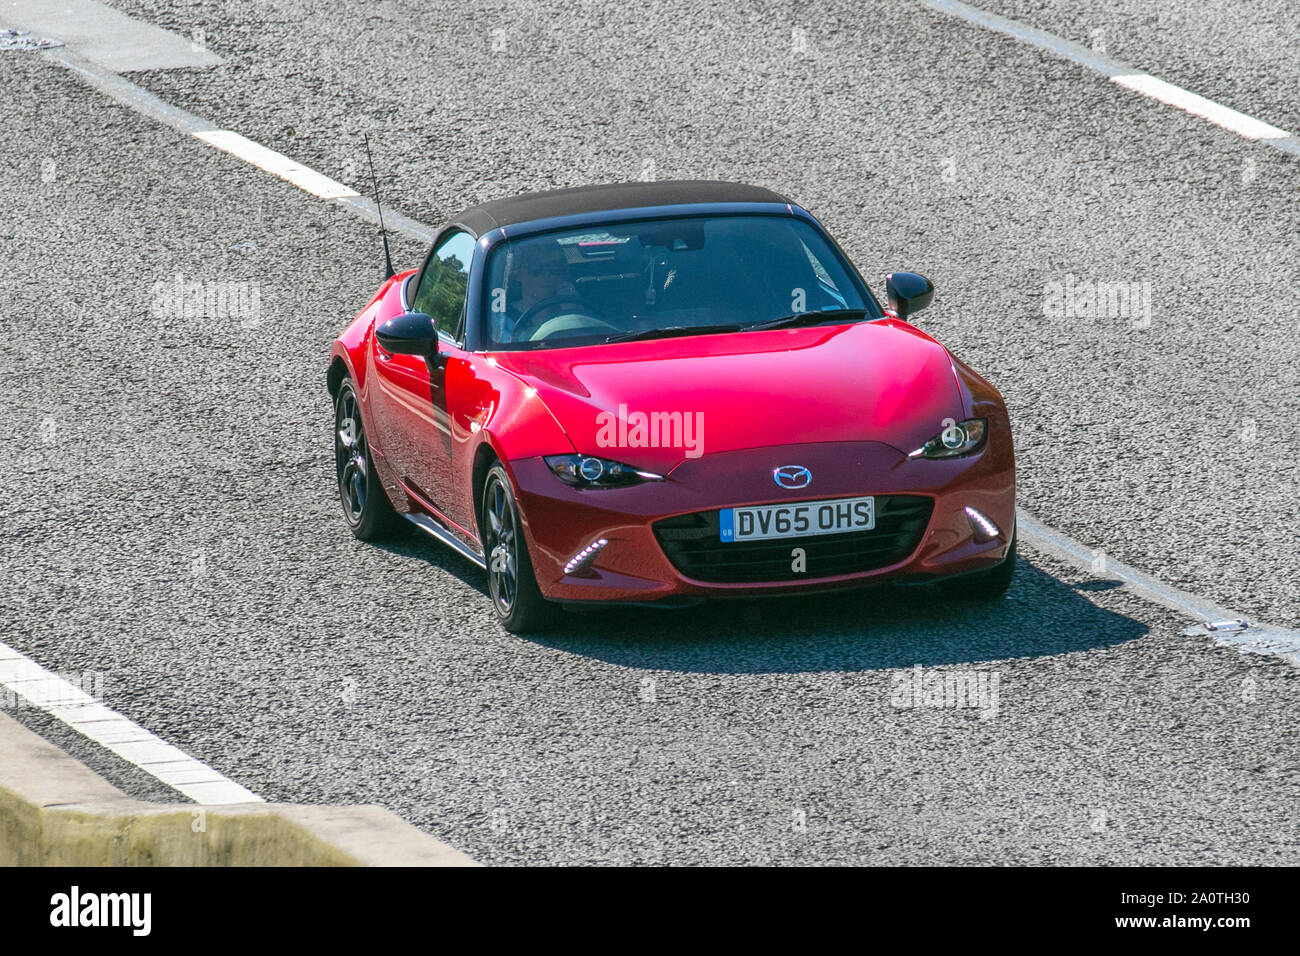 2015 rot Mazda MX-5 Sport NAV; Großbritannien Verkehr, Transport, moderne, Limousinen, Süd - auf die 3 spurige Autobahn M6 Autobahn gebunden. Stockfoto